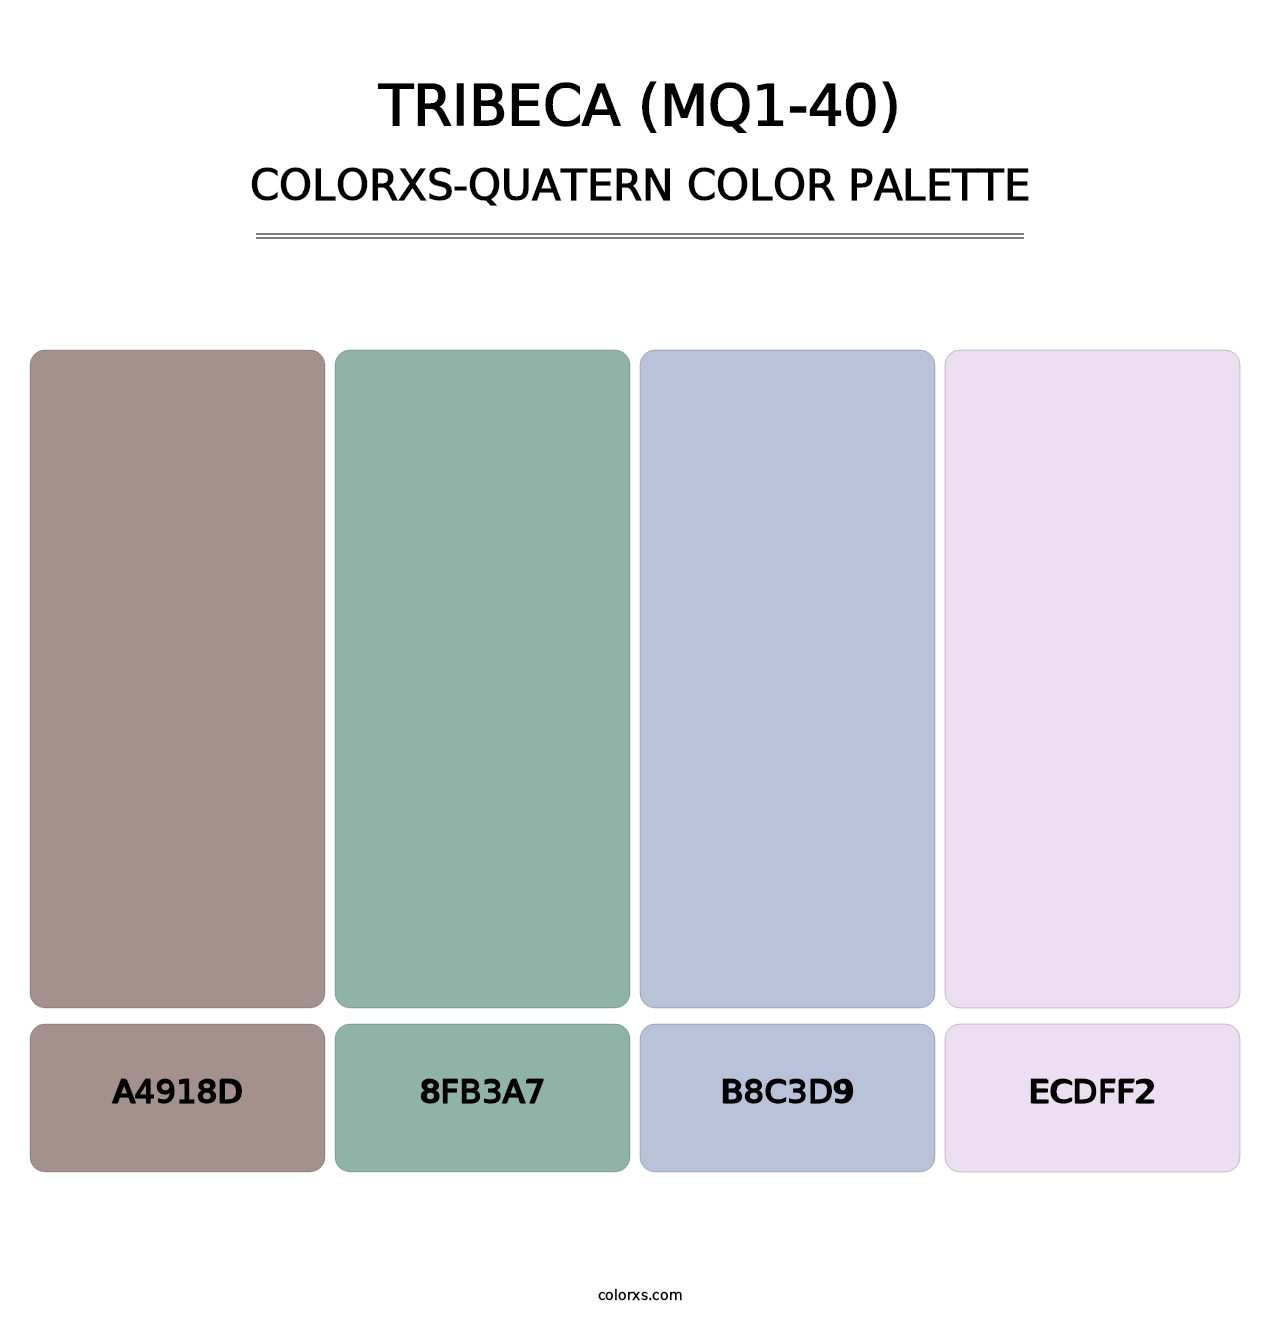 Tribeca (MQ1-40) - Colorxs Quatern Palette